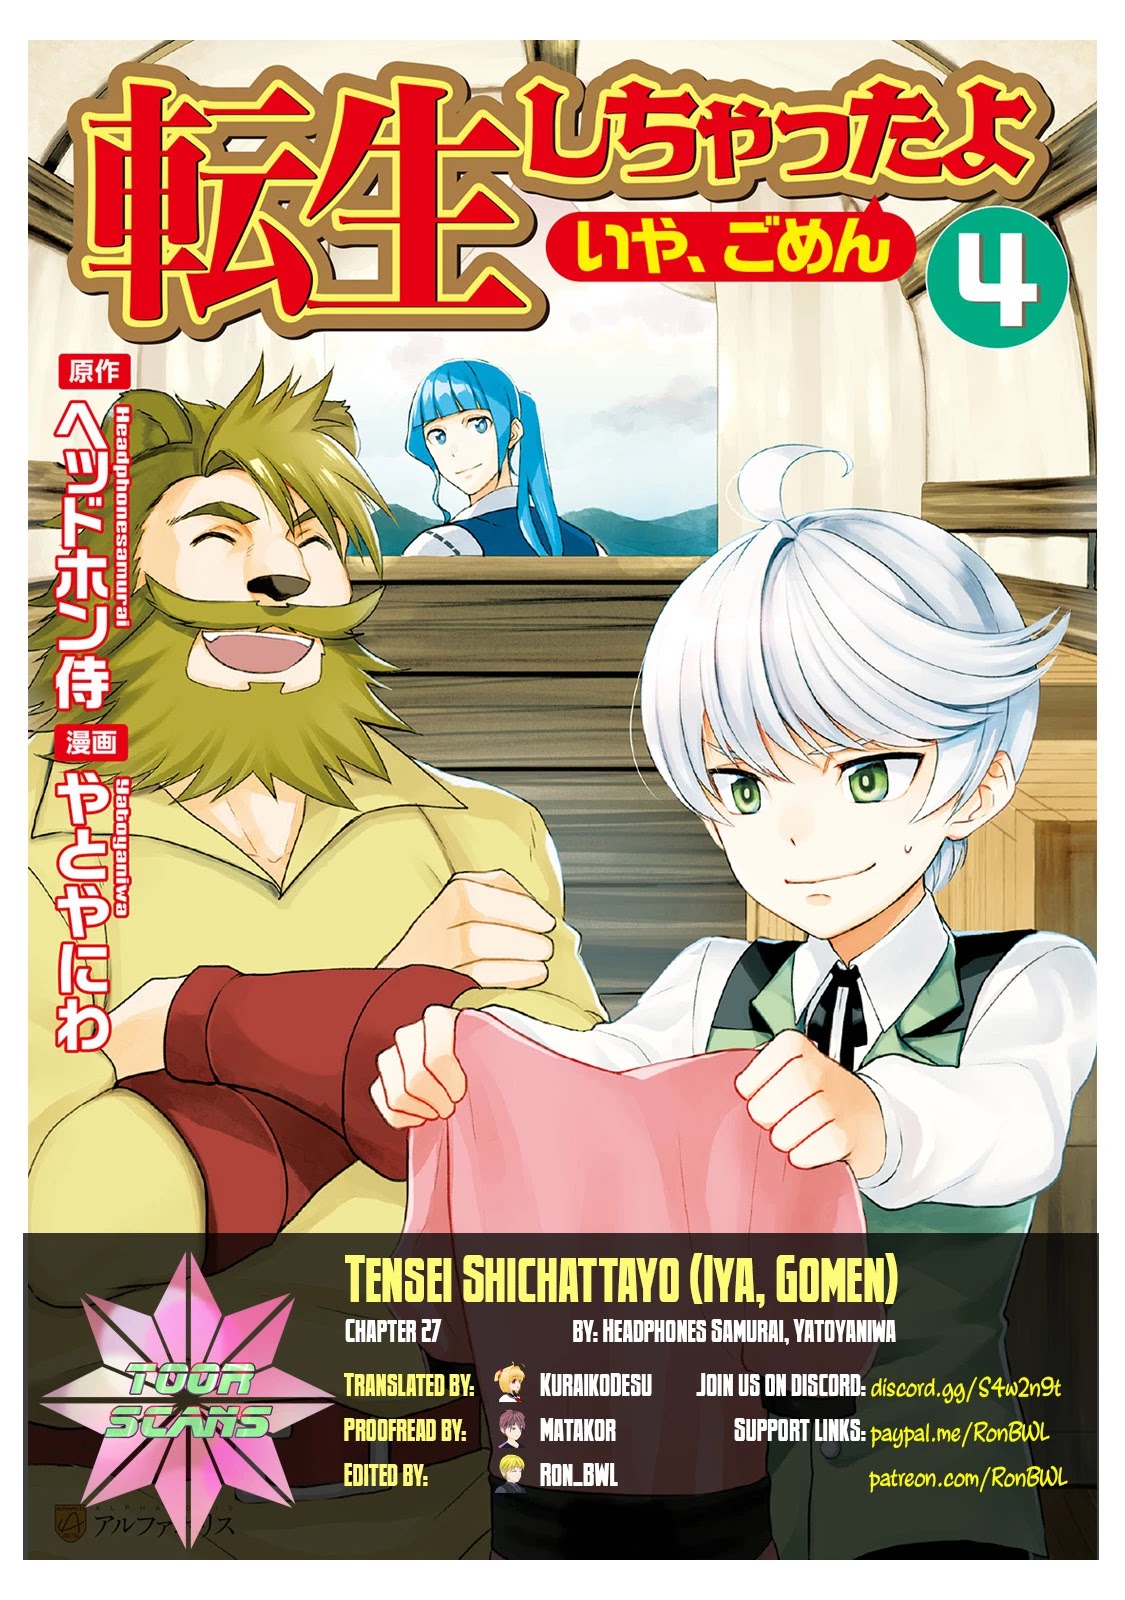 Tenseishichatta Yo (Iya, Gomen) - Page 1